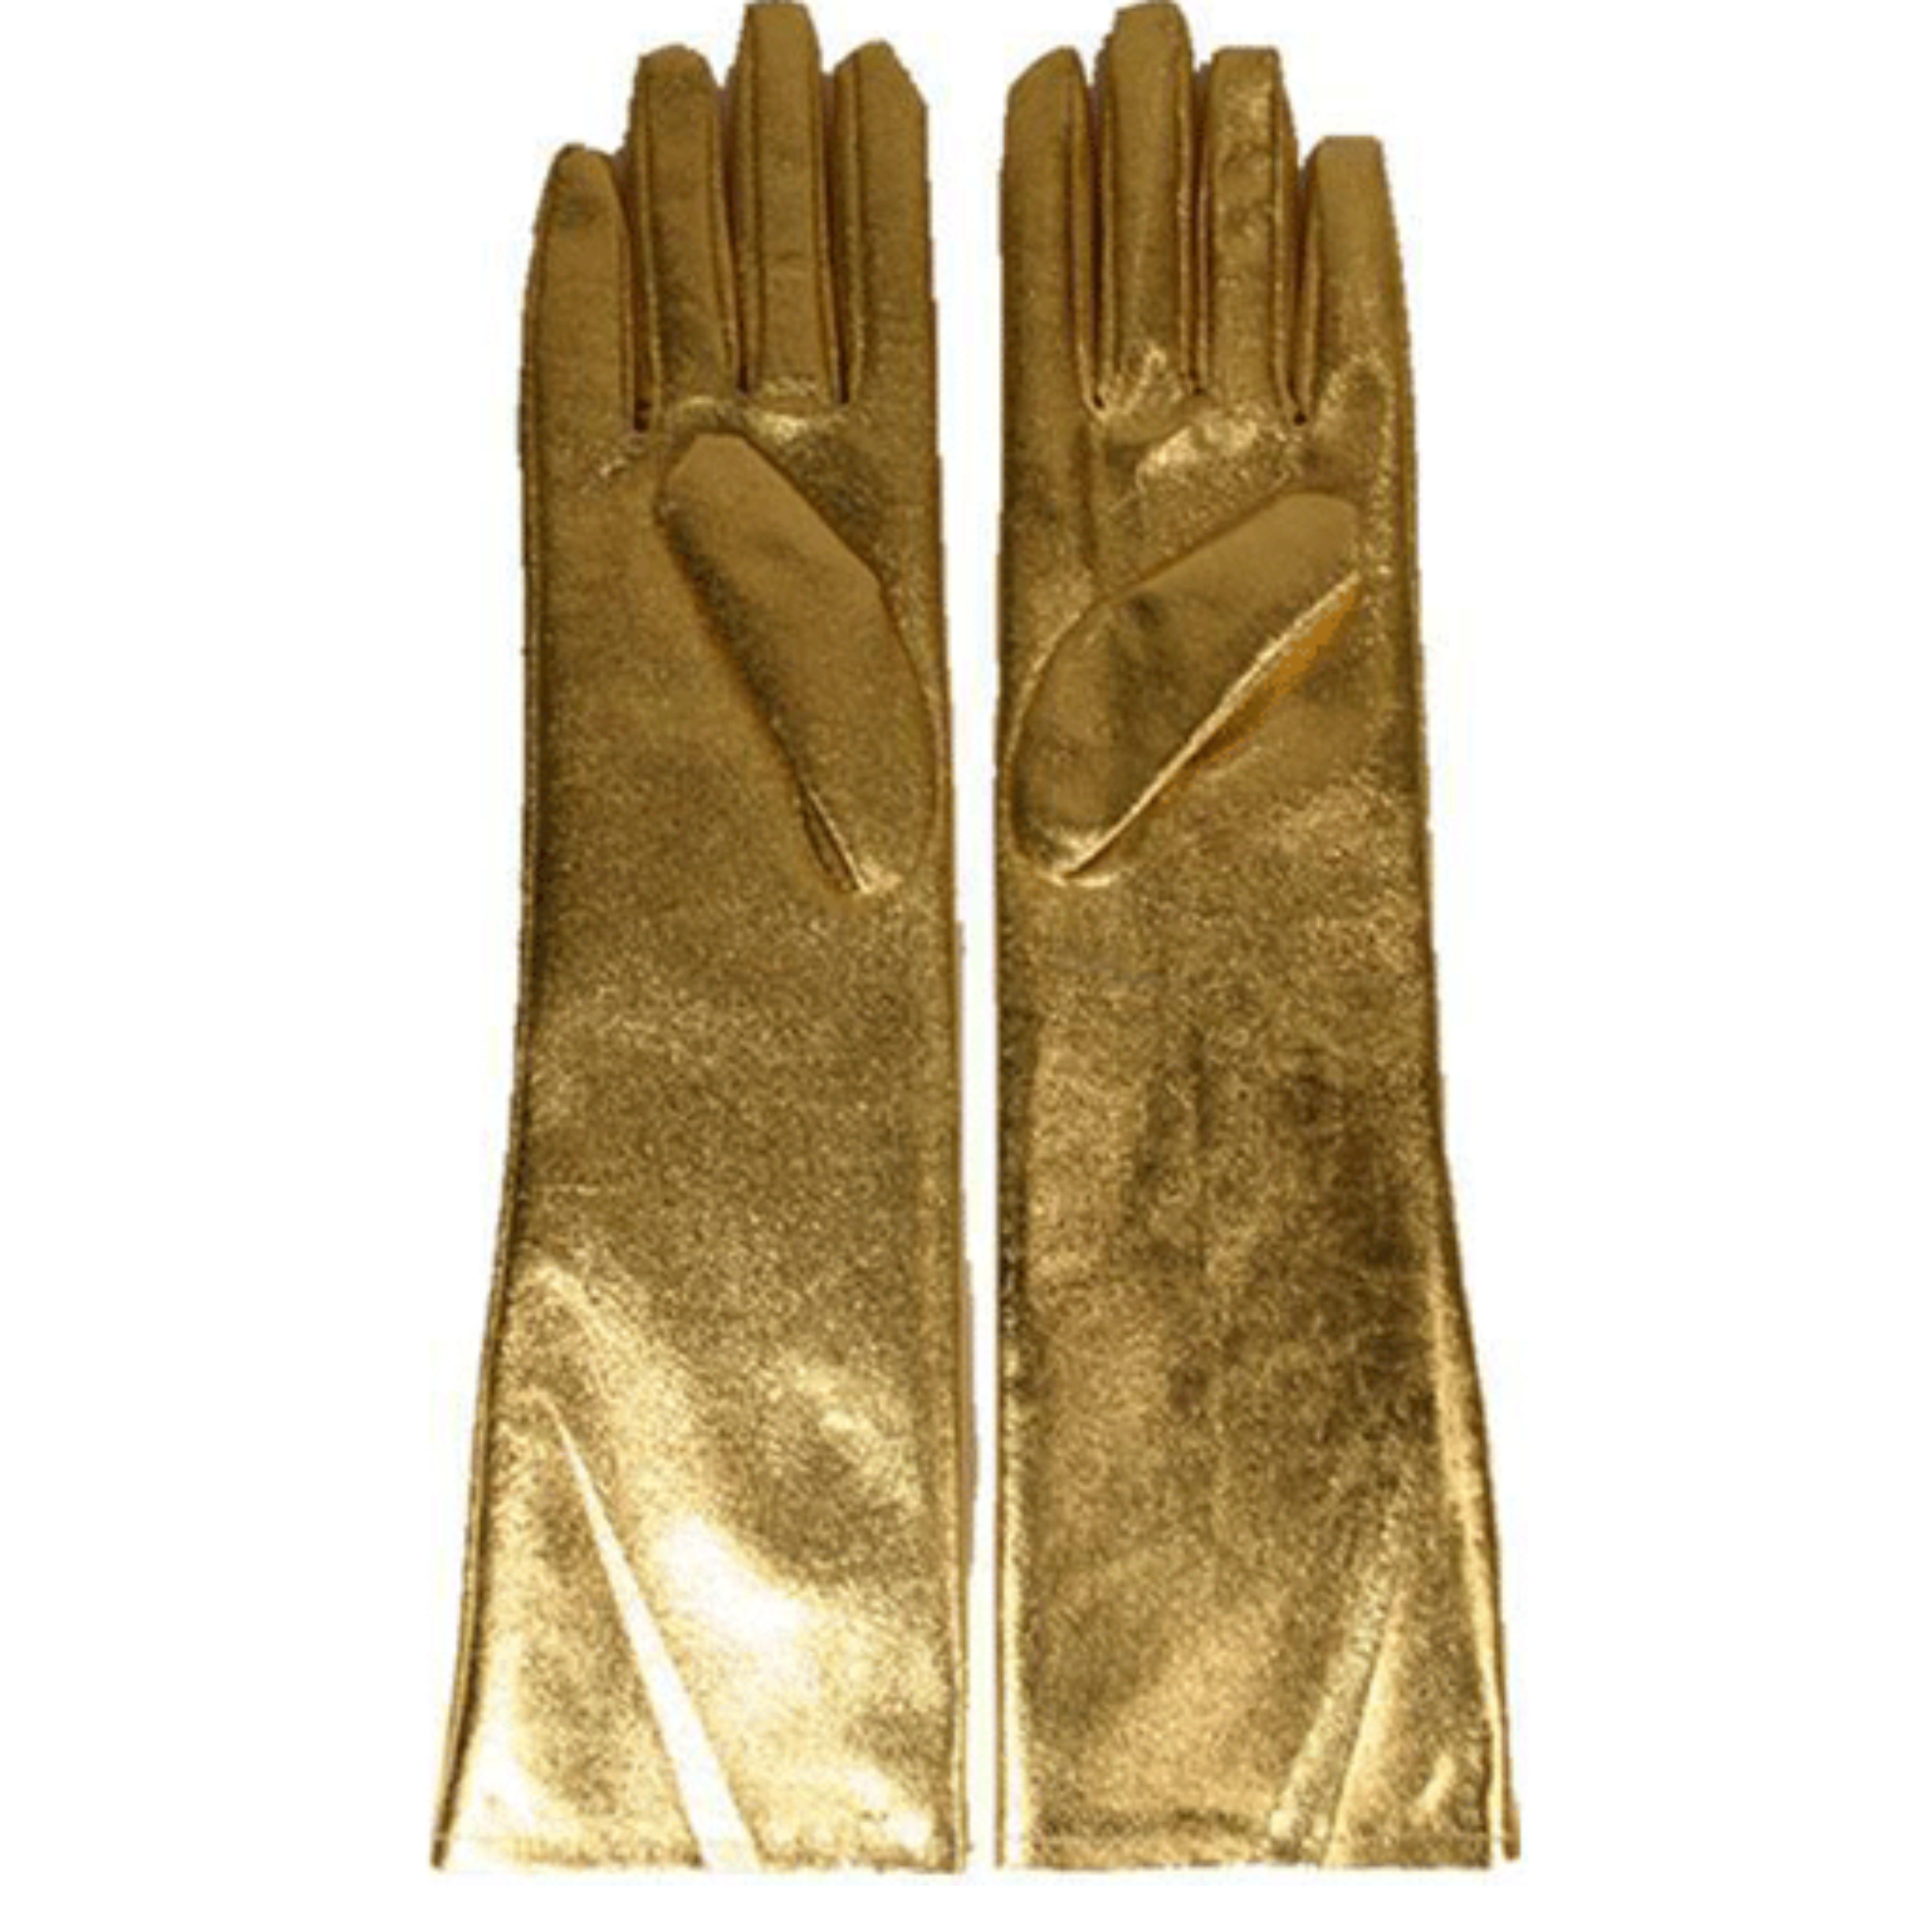 Gala handschoenen goud dames